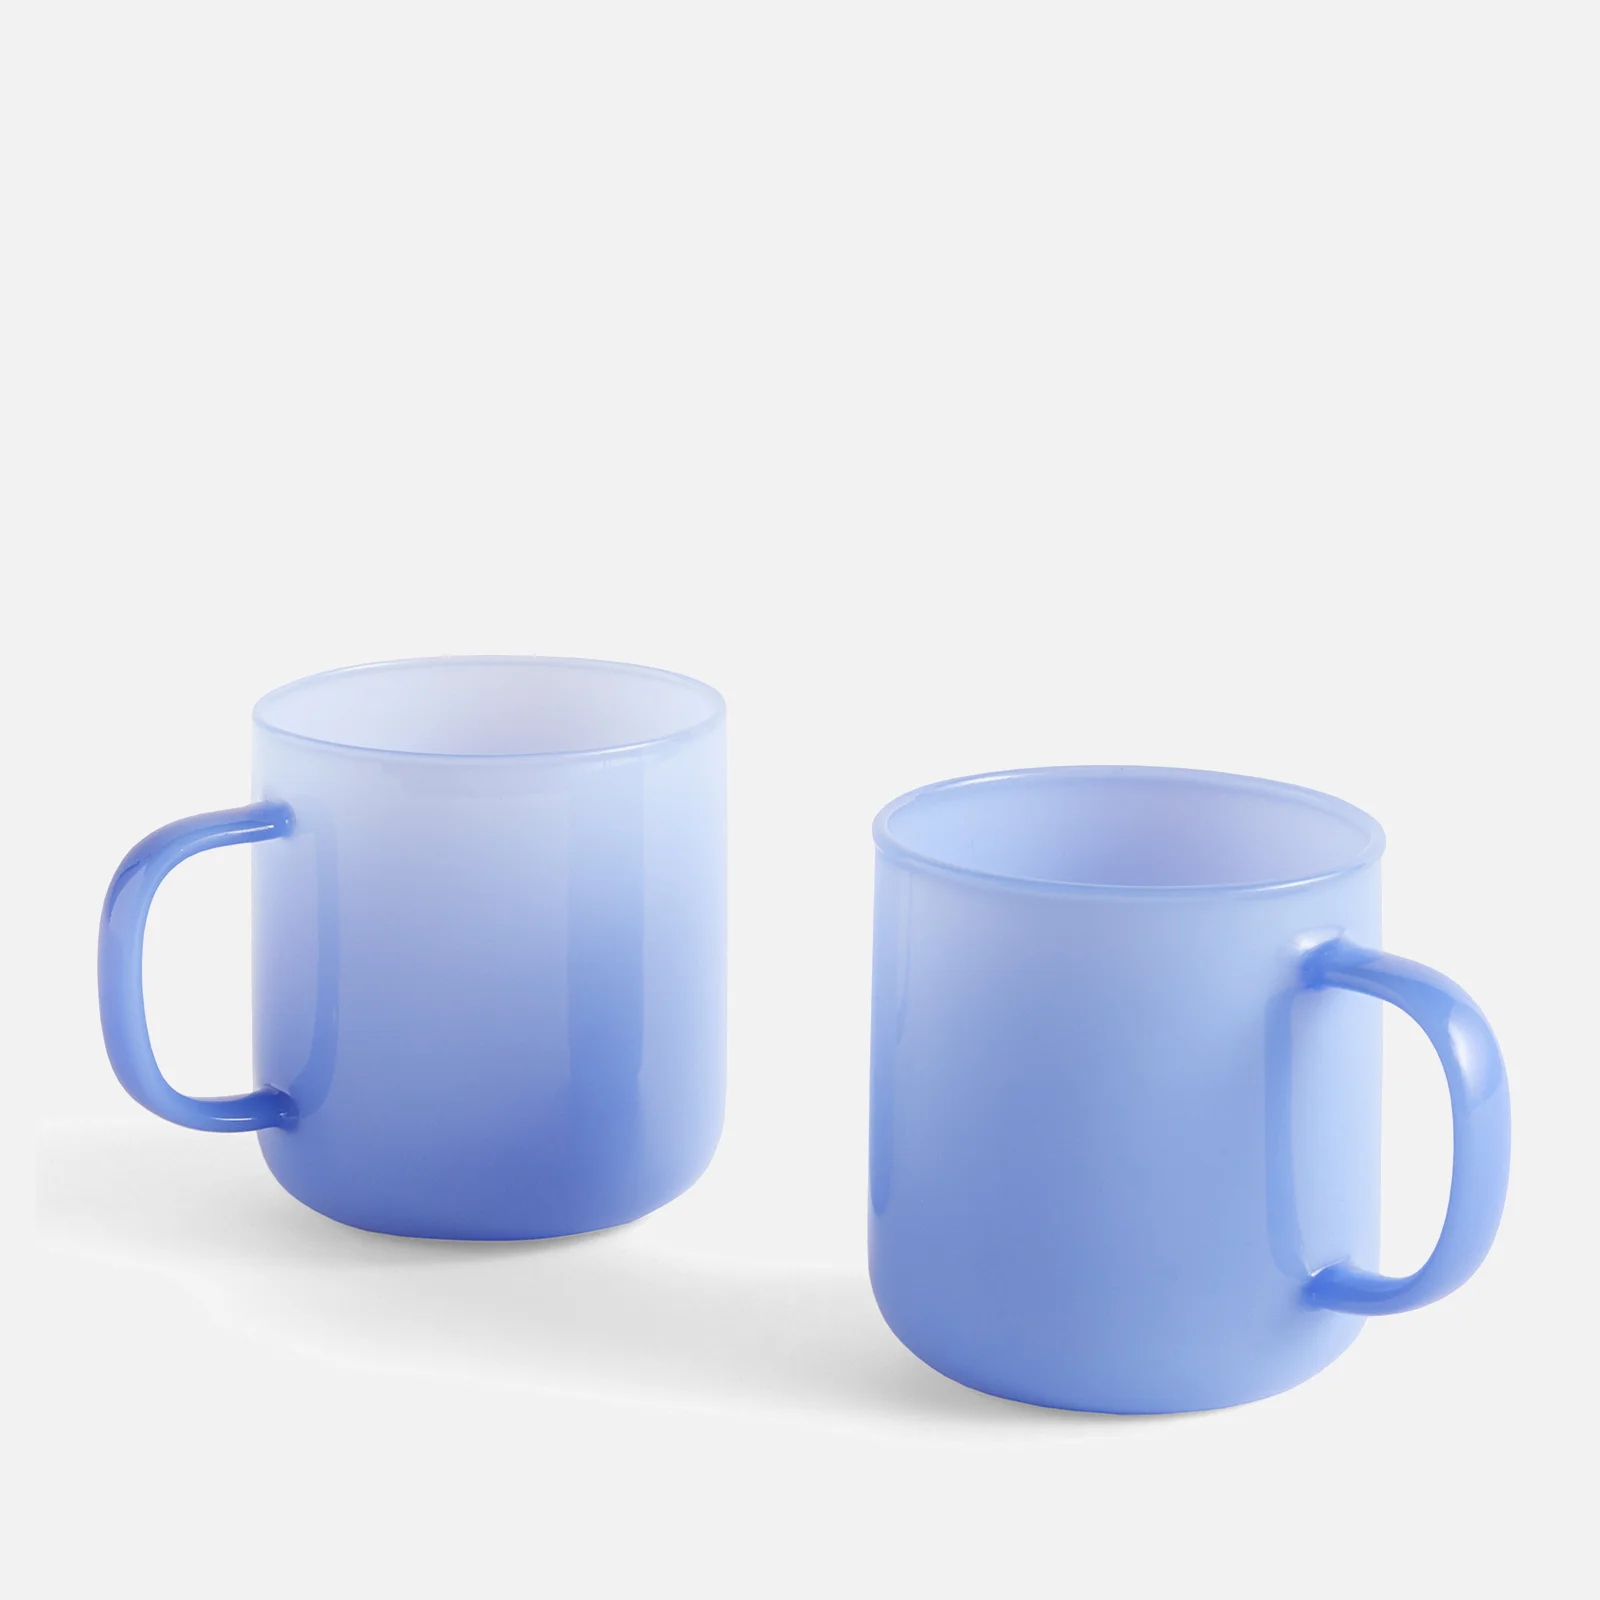 HAY Borosilicate Mug - Set of 2 - Light Blue Image 1